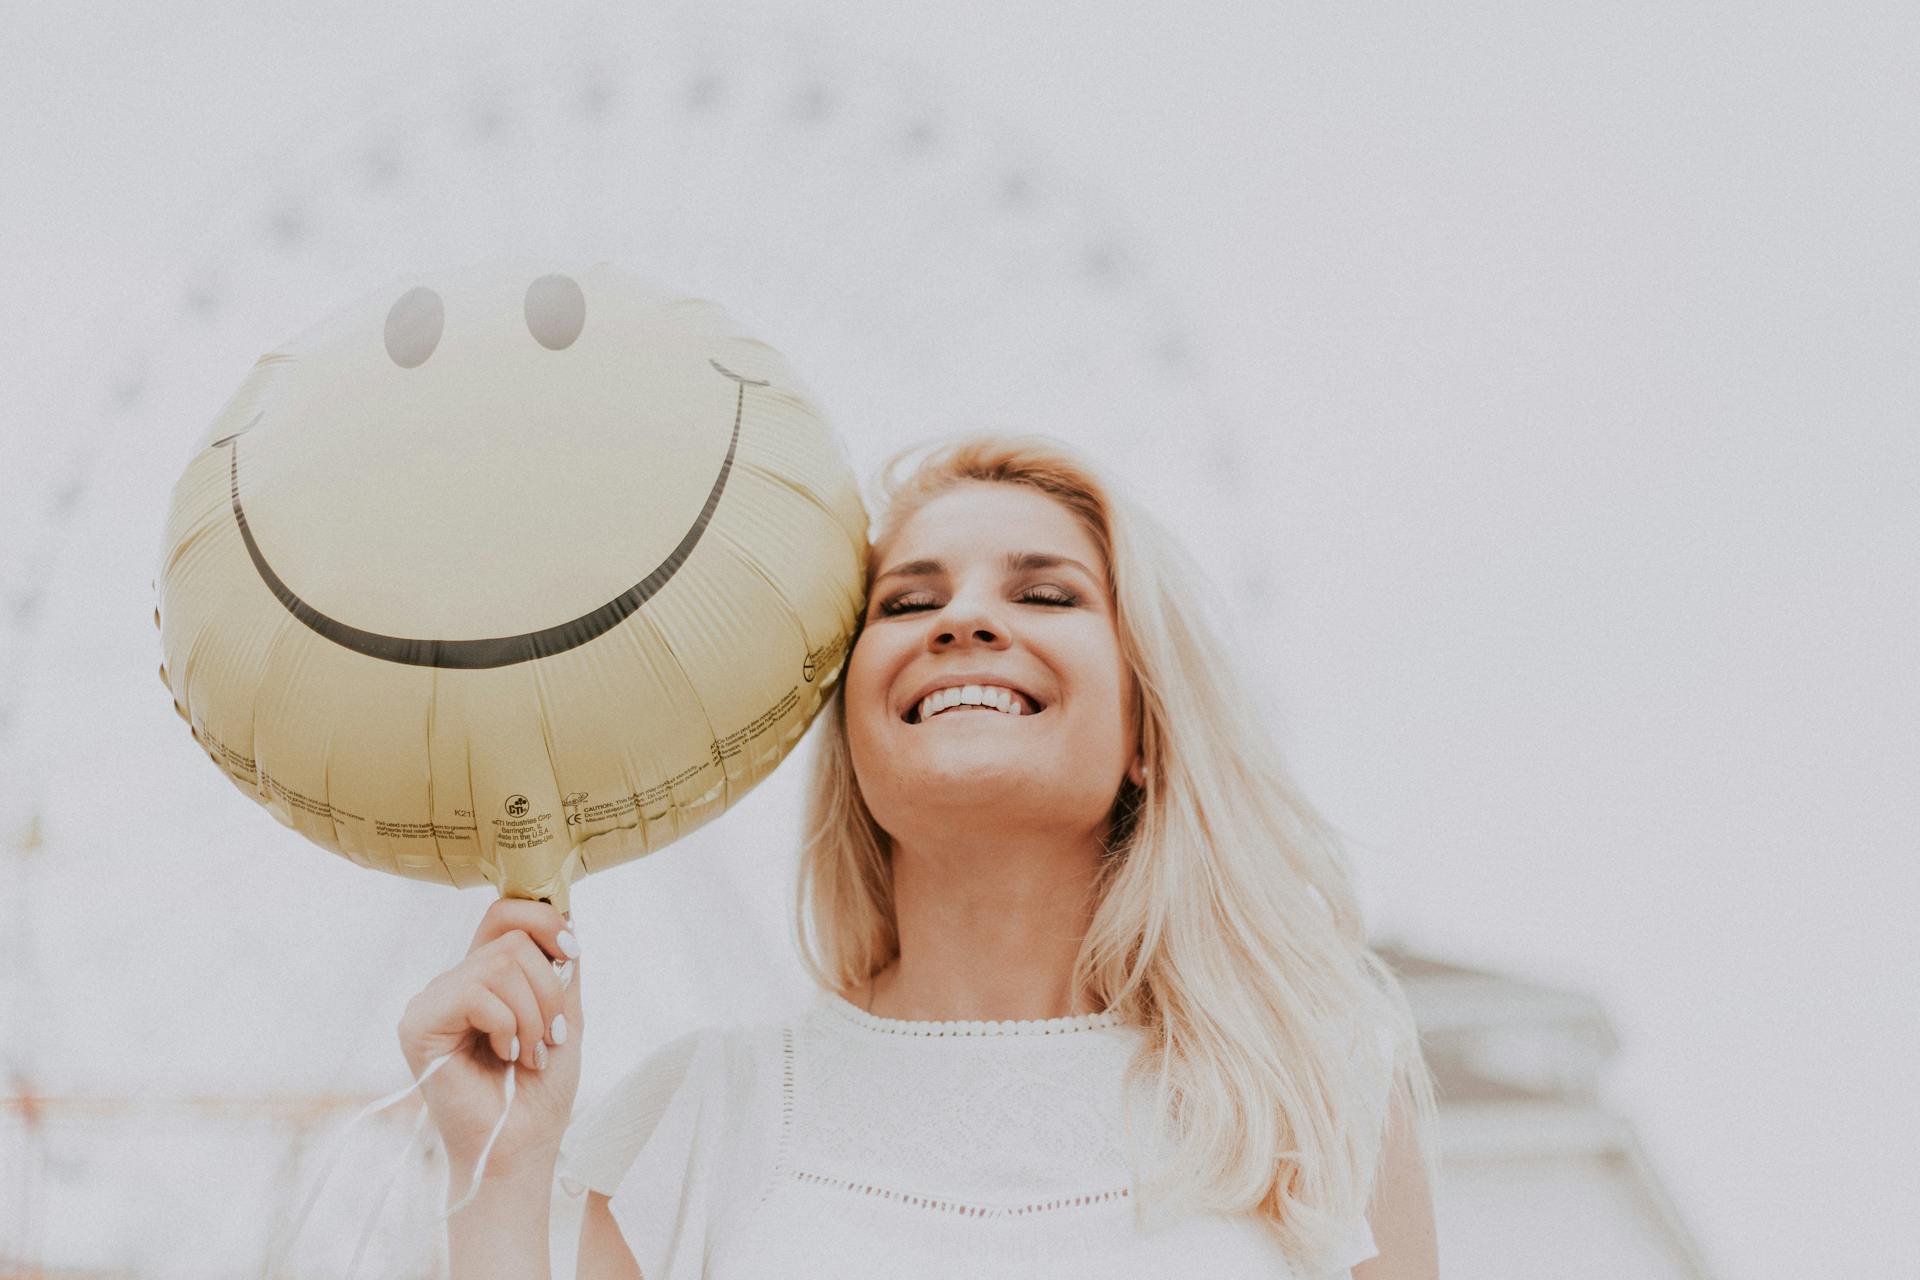 Femme tenant un ballon tout en souriant | Source : Pexels